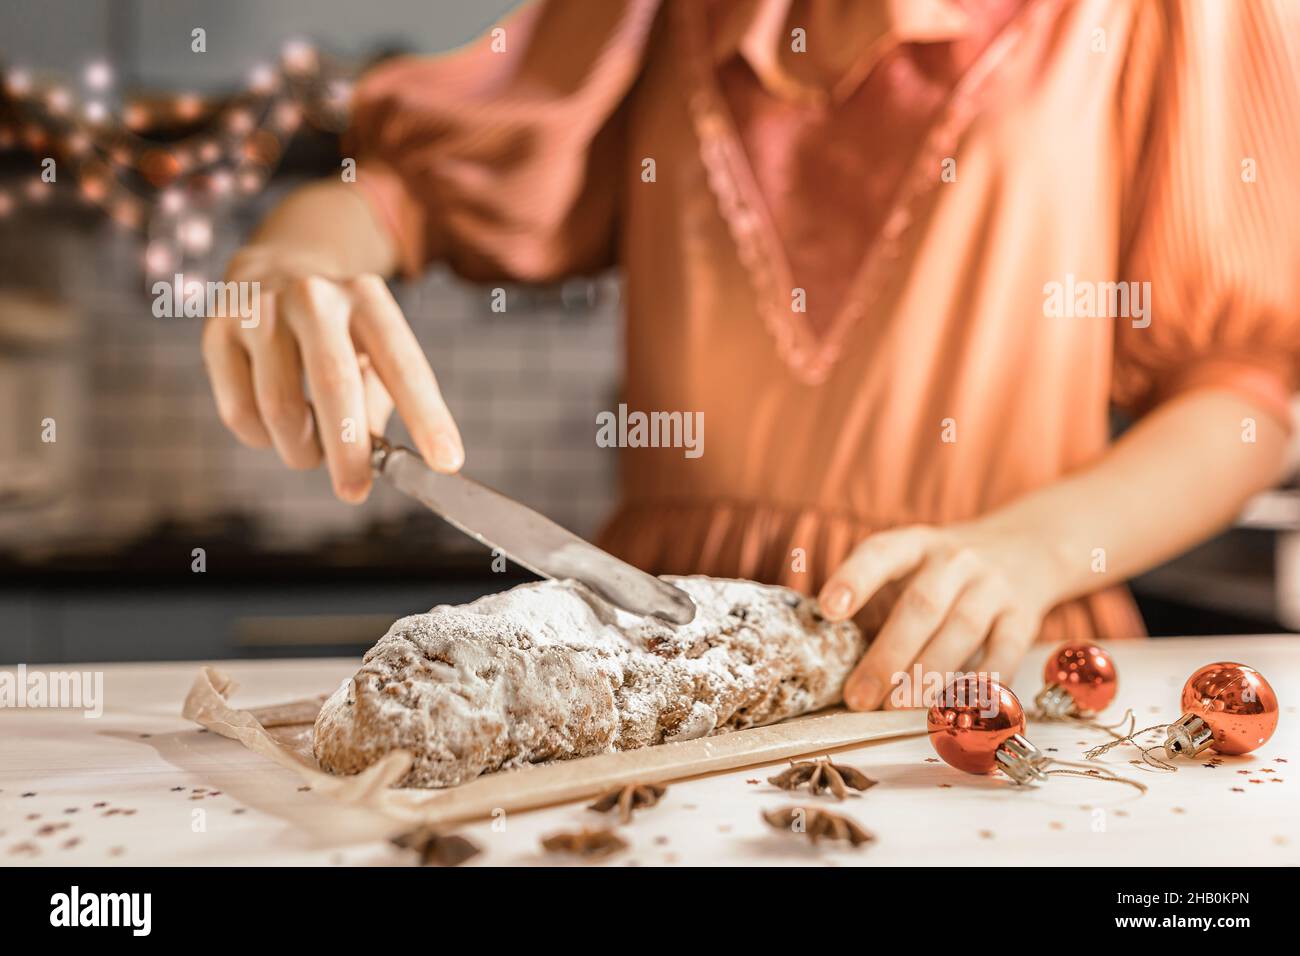 Schneiden Sie festliche traditionelle deutsche Stollenkuchen in Stücke. Mädchen in festlichem Kleid schneidet Stollen mit Messer in der Küche am heiligabend Stockfoto